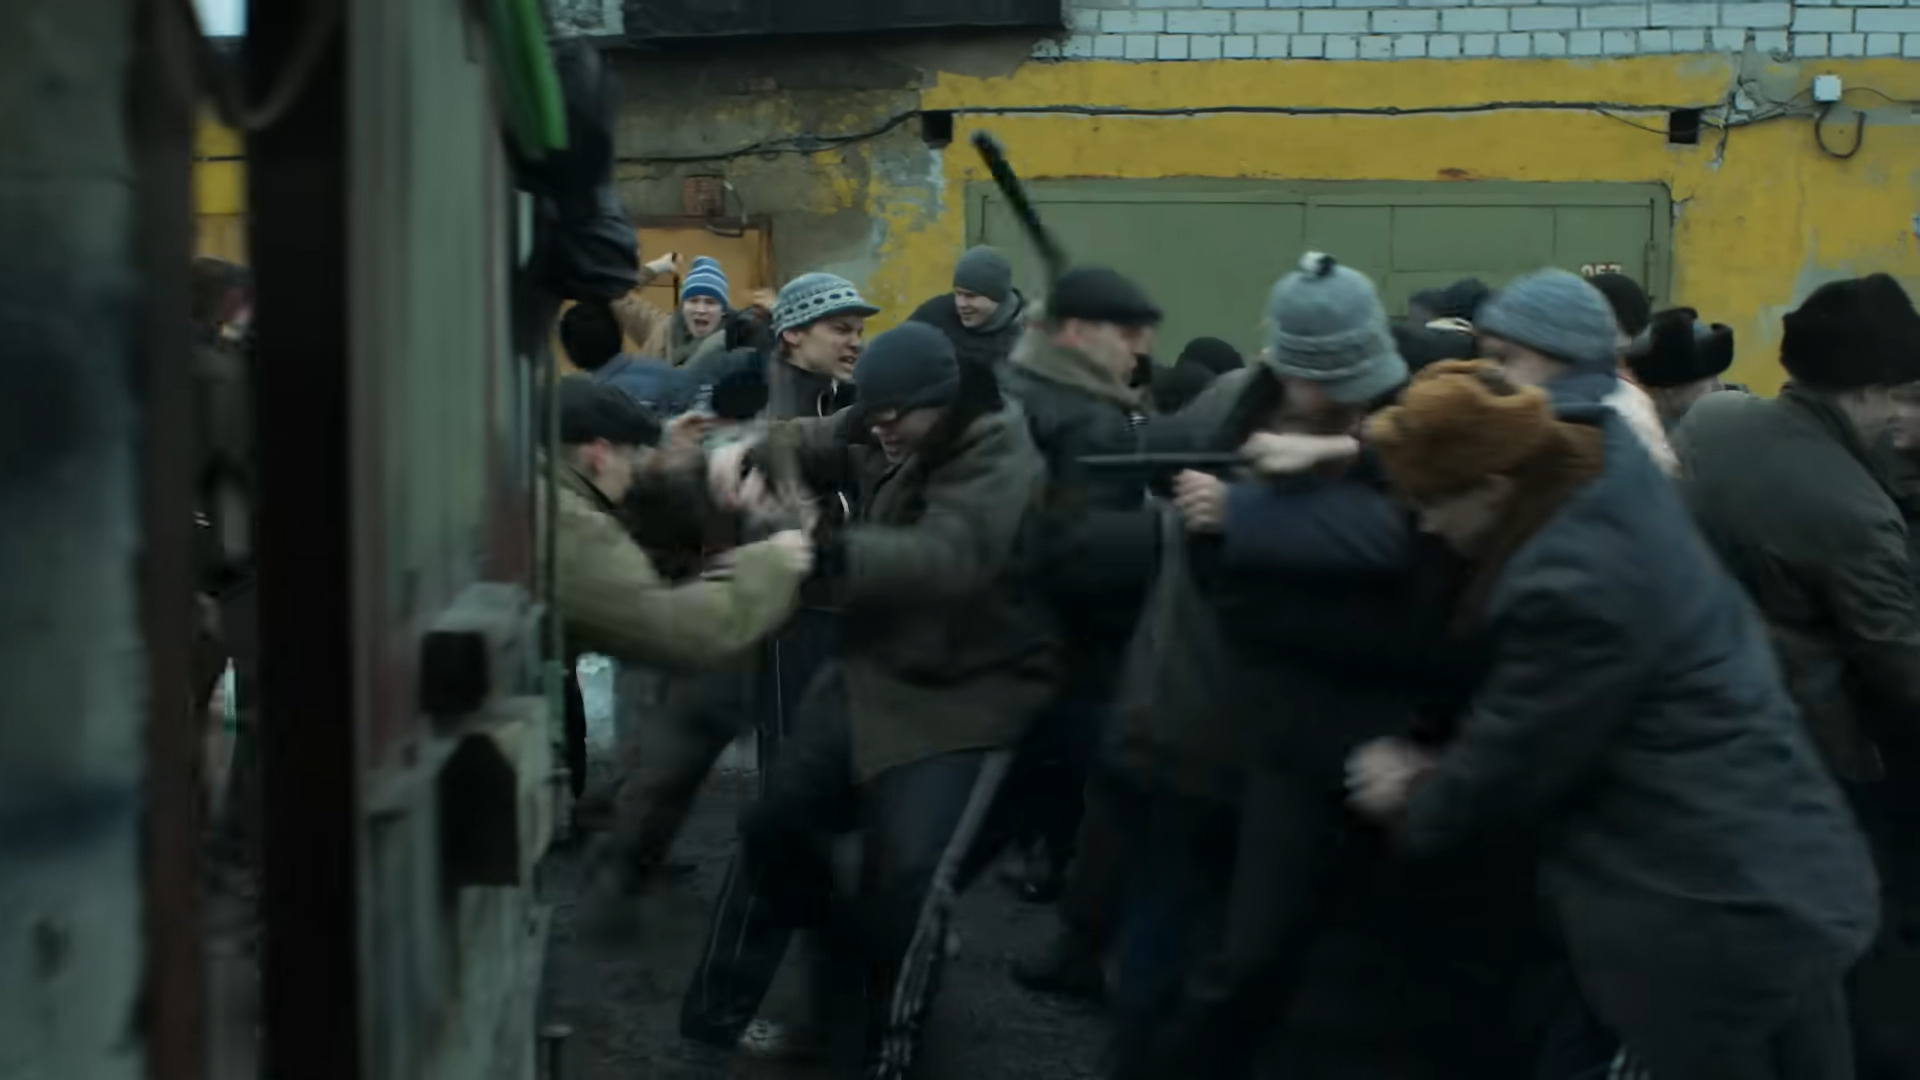 Массовые драки были повсеместно в российских городах, но в Казани они проходили с особой жестокостью